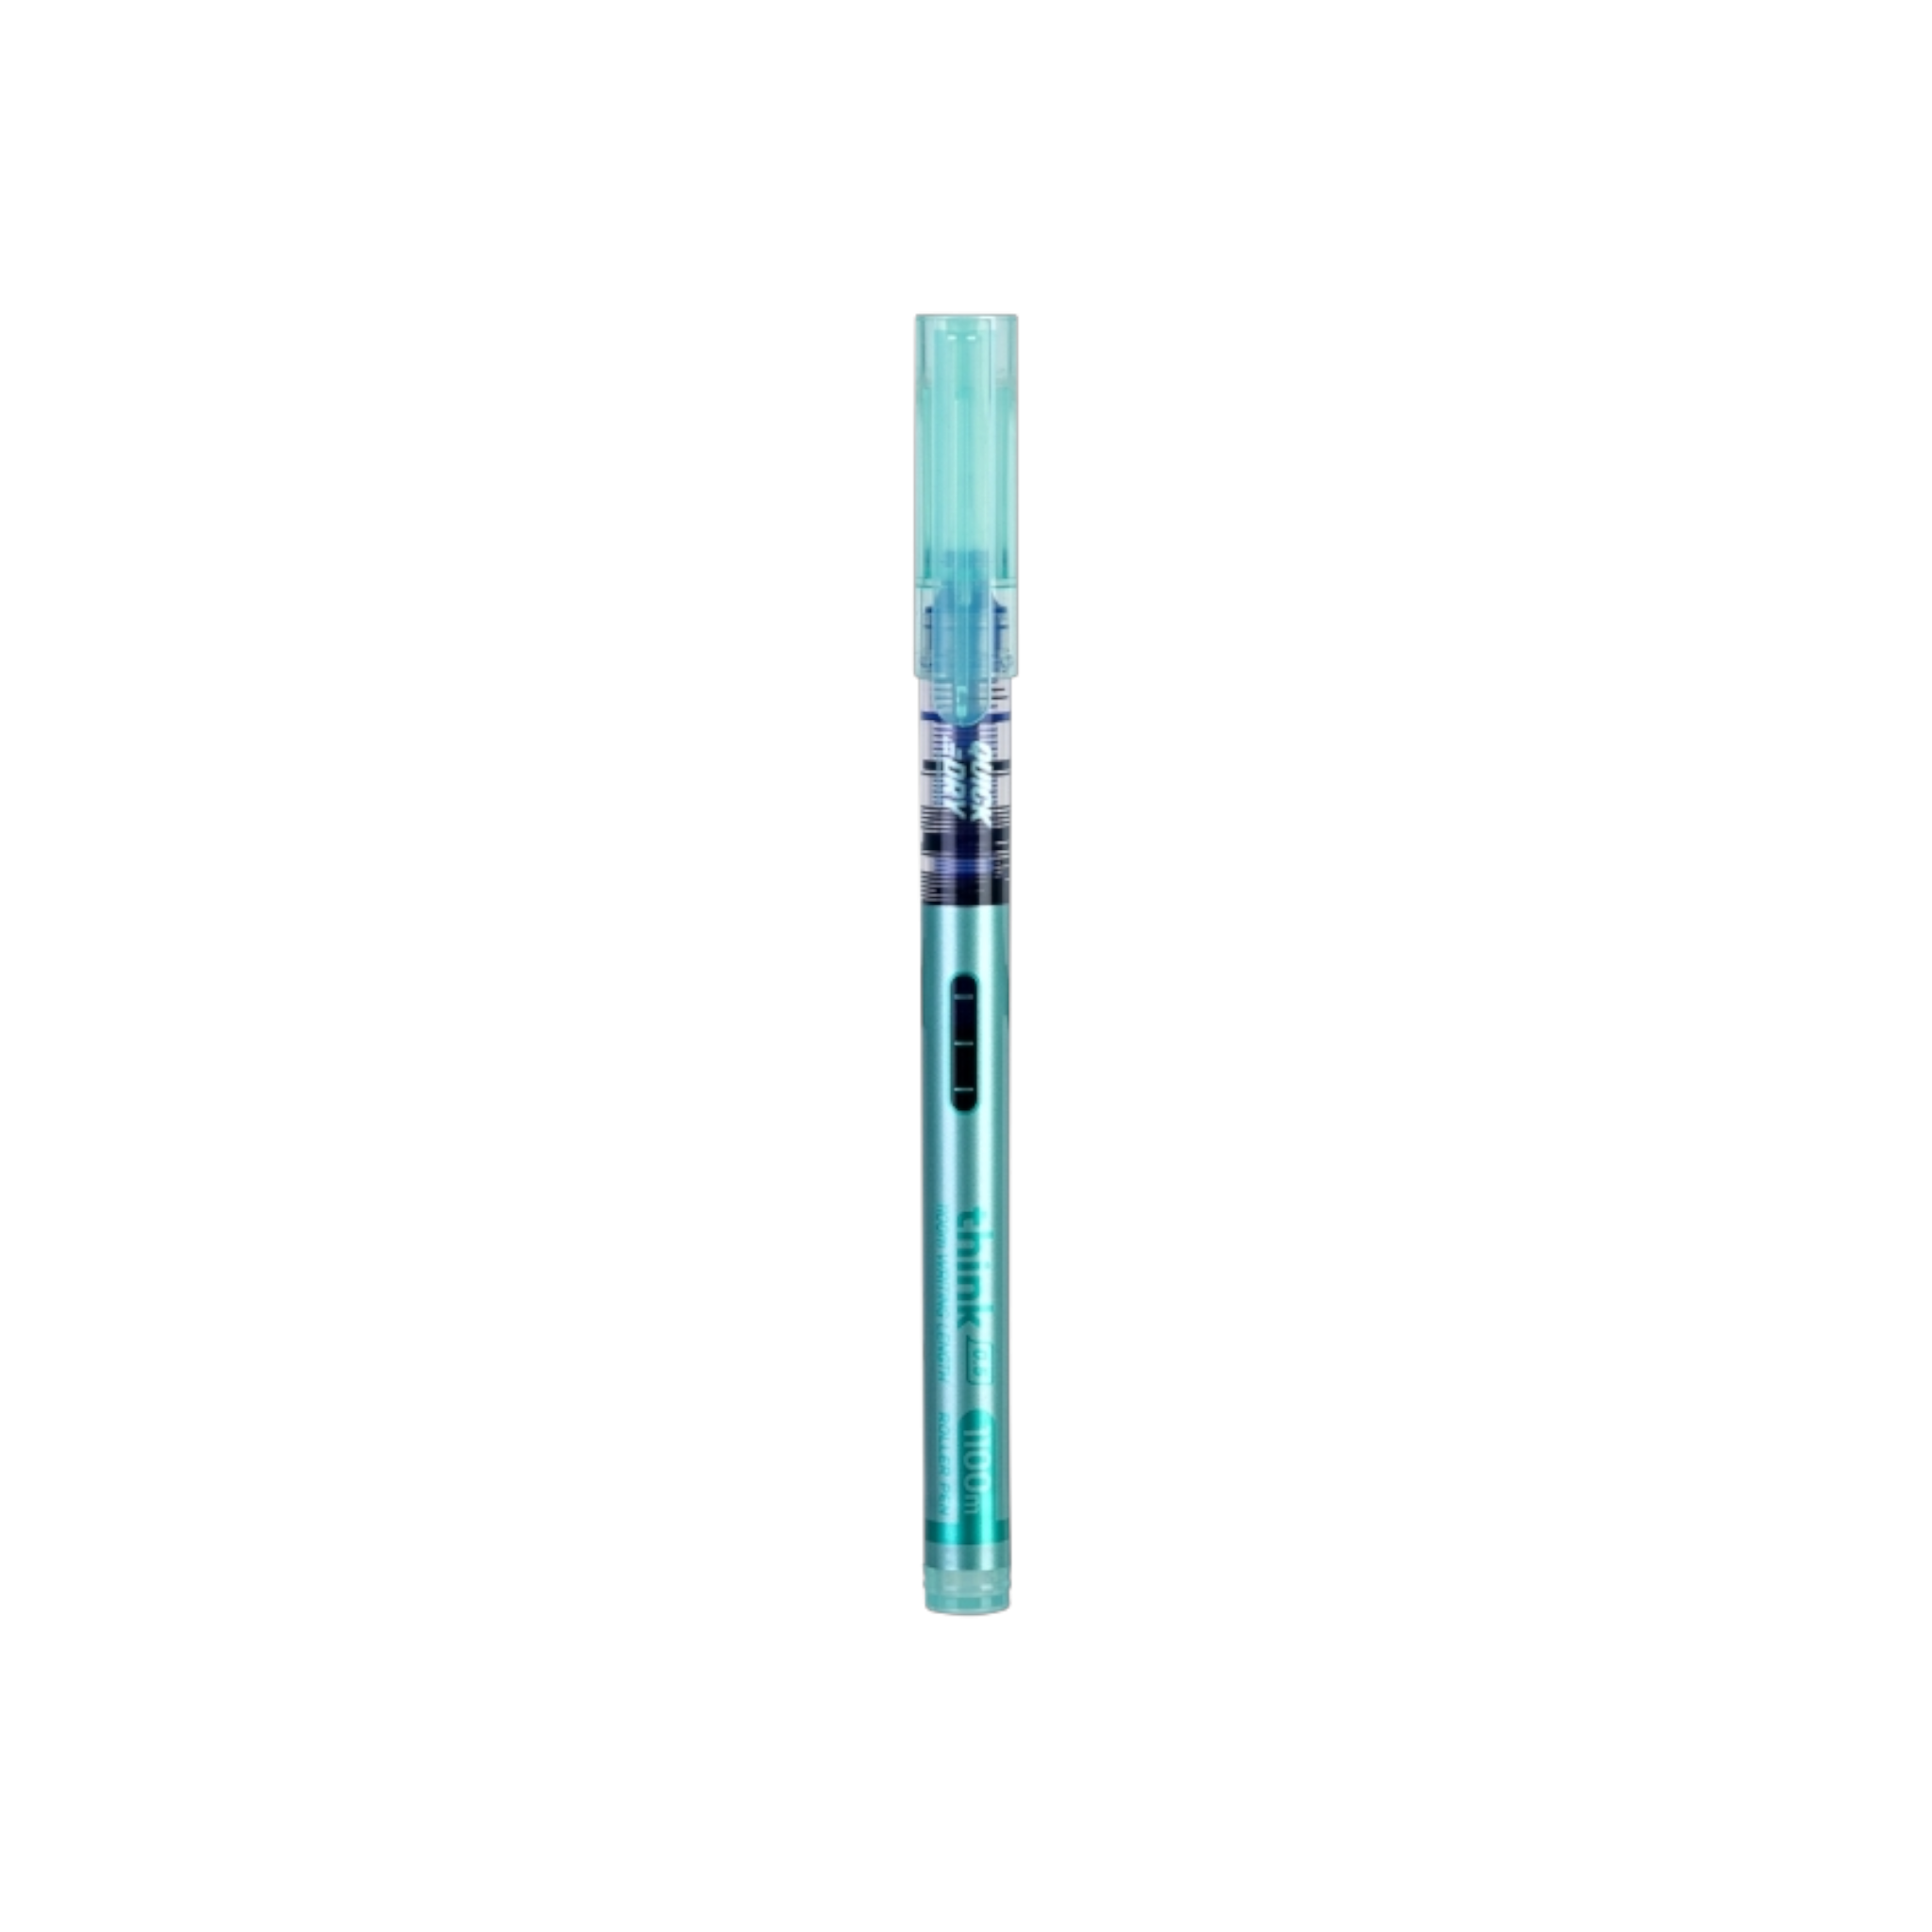 Deli Think Roller Pen Needle Tip 0.5mm Blue Ink